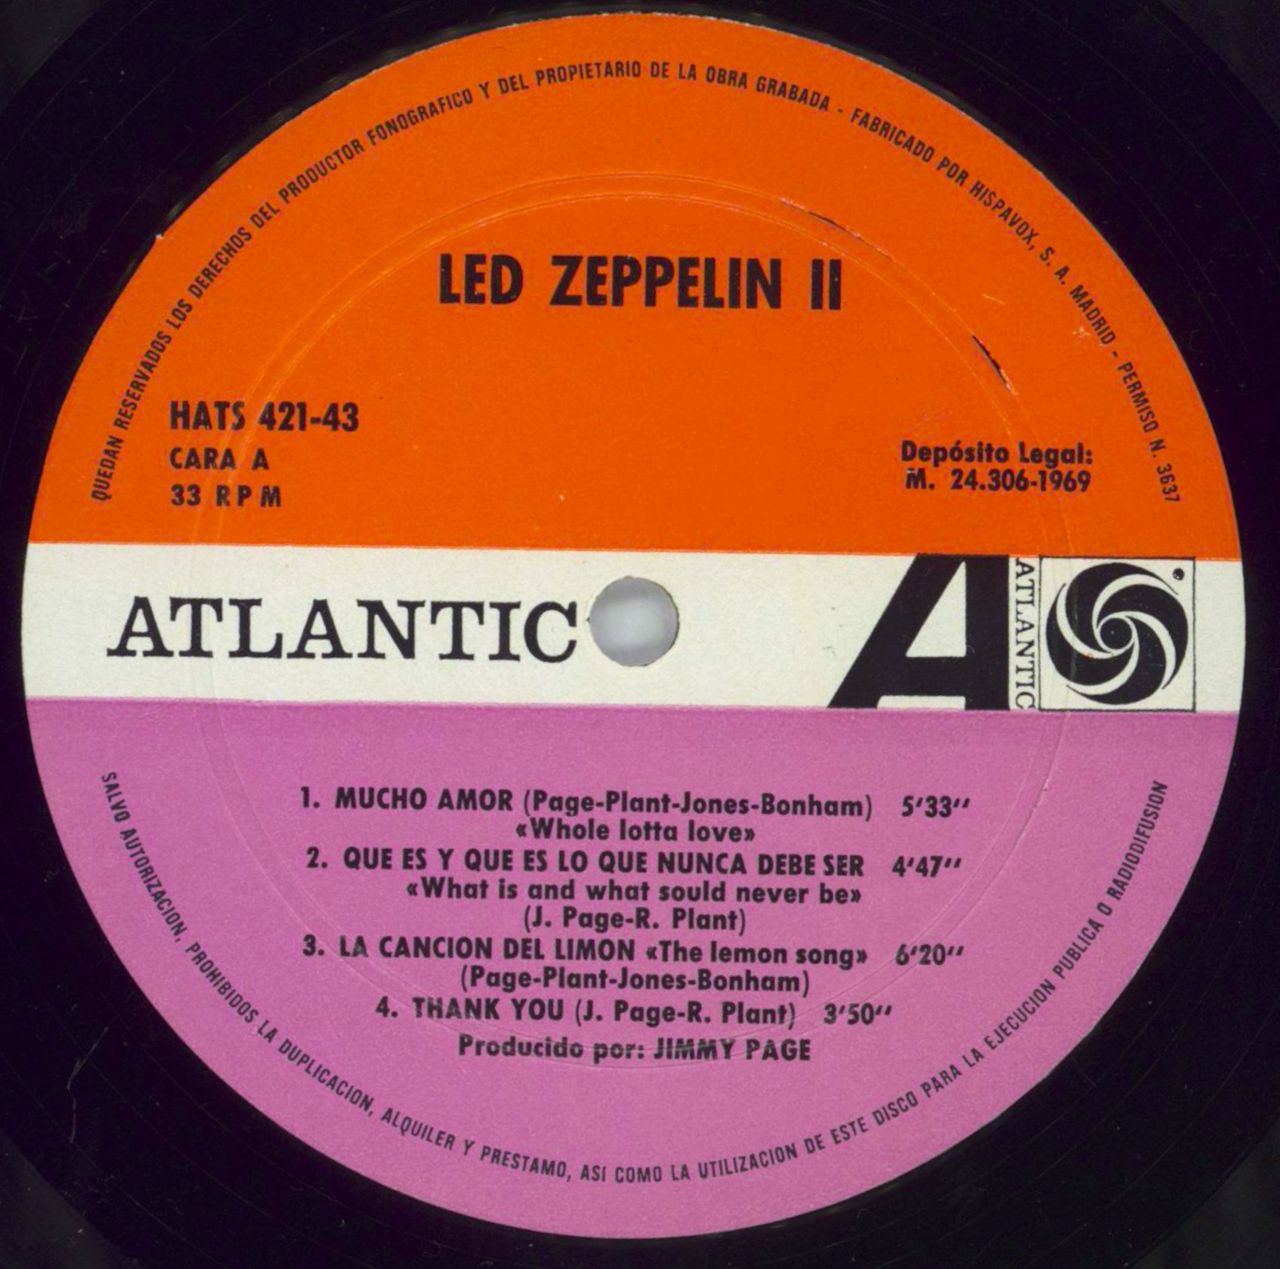 Led Zeppelin's Cd collection. The Led III is on vinyl :) : r/ledzeppelin